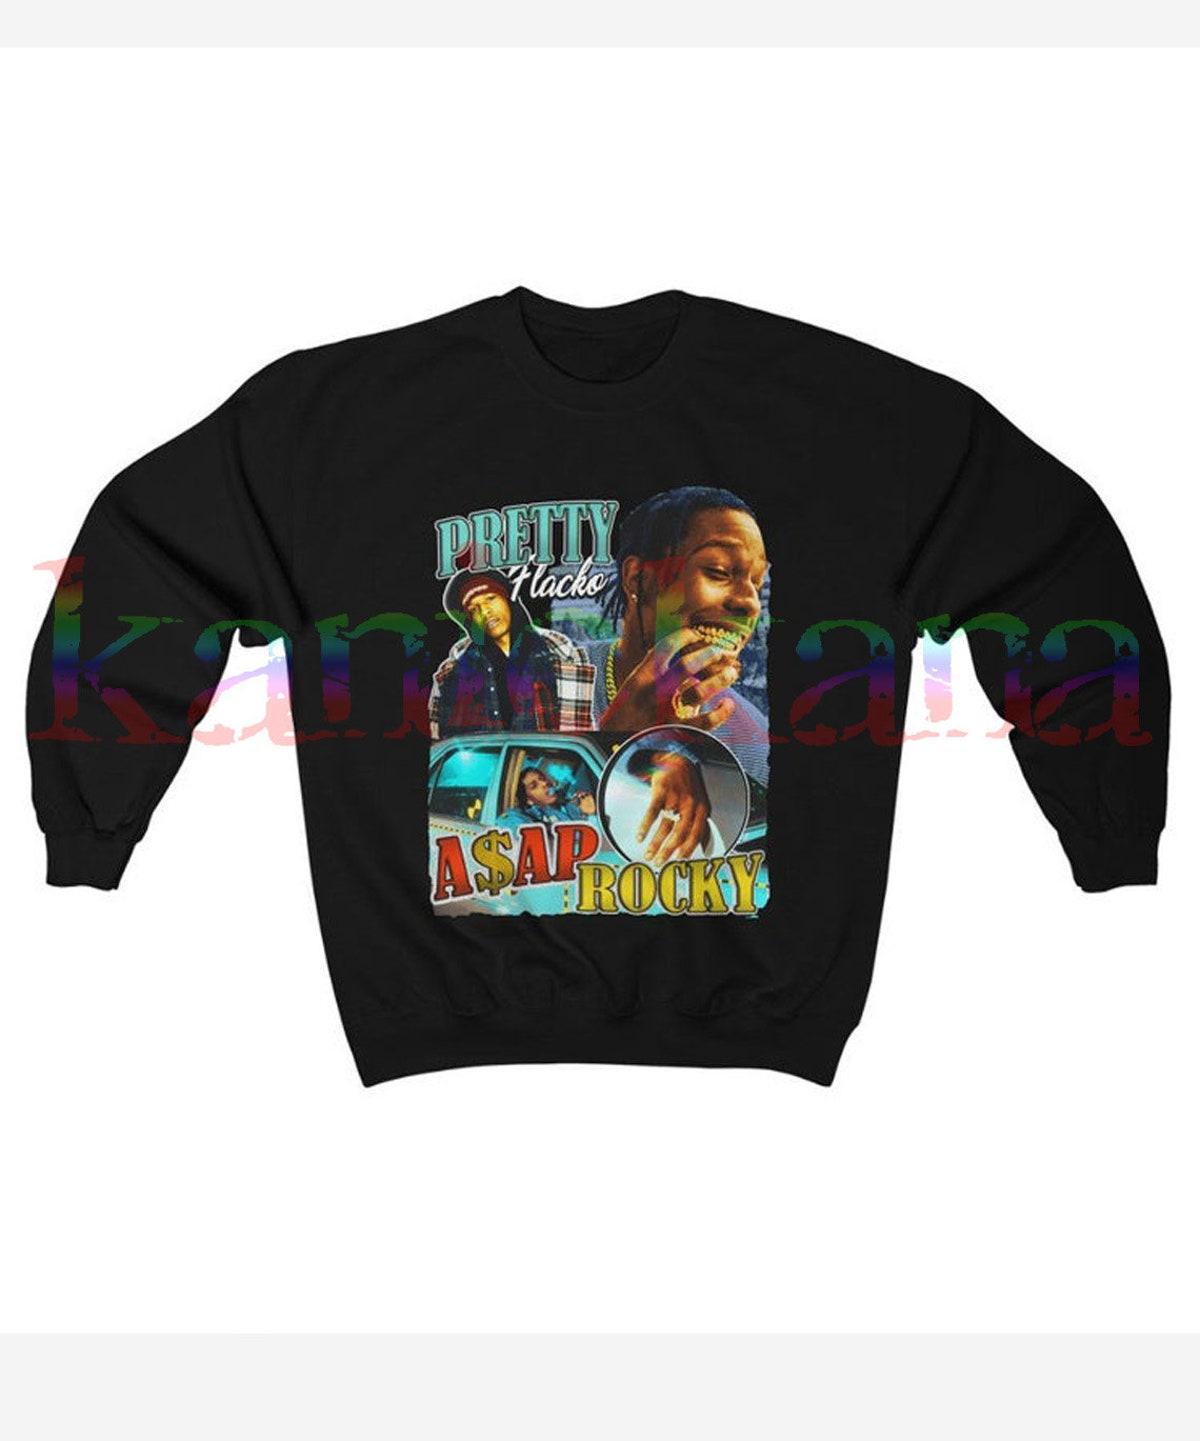 Love Live Asap Rocky Rapper Graphic T-shirt For Hip Hop Fans